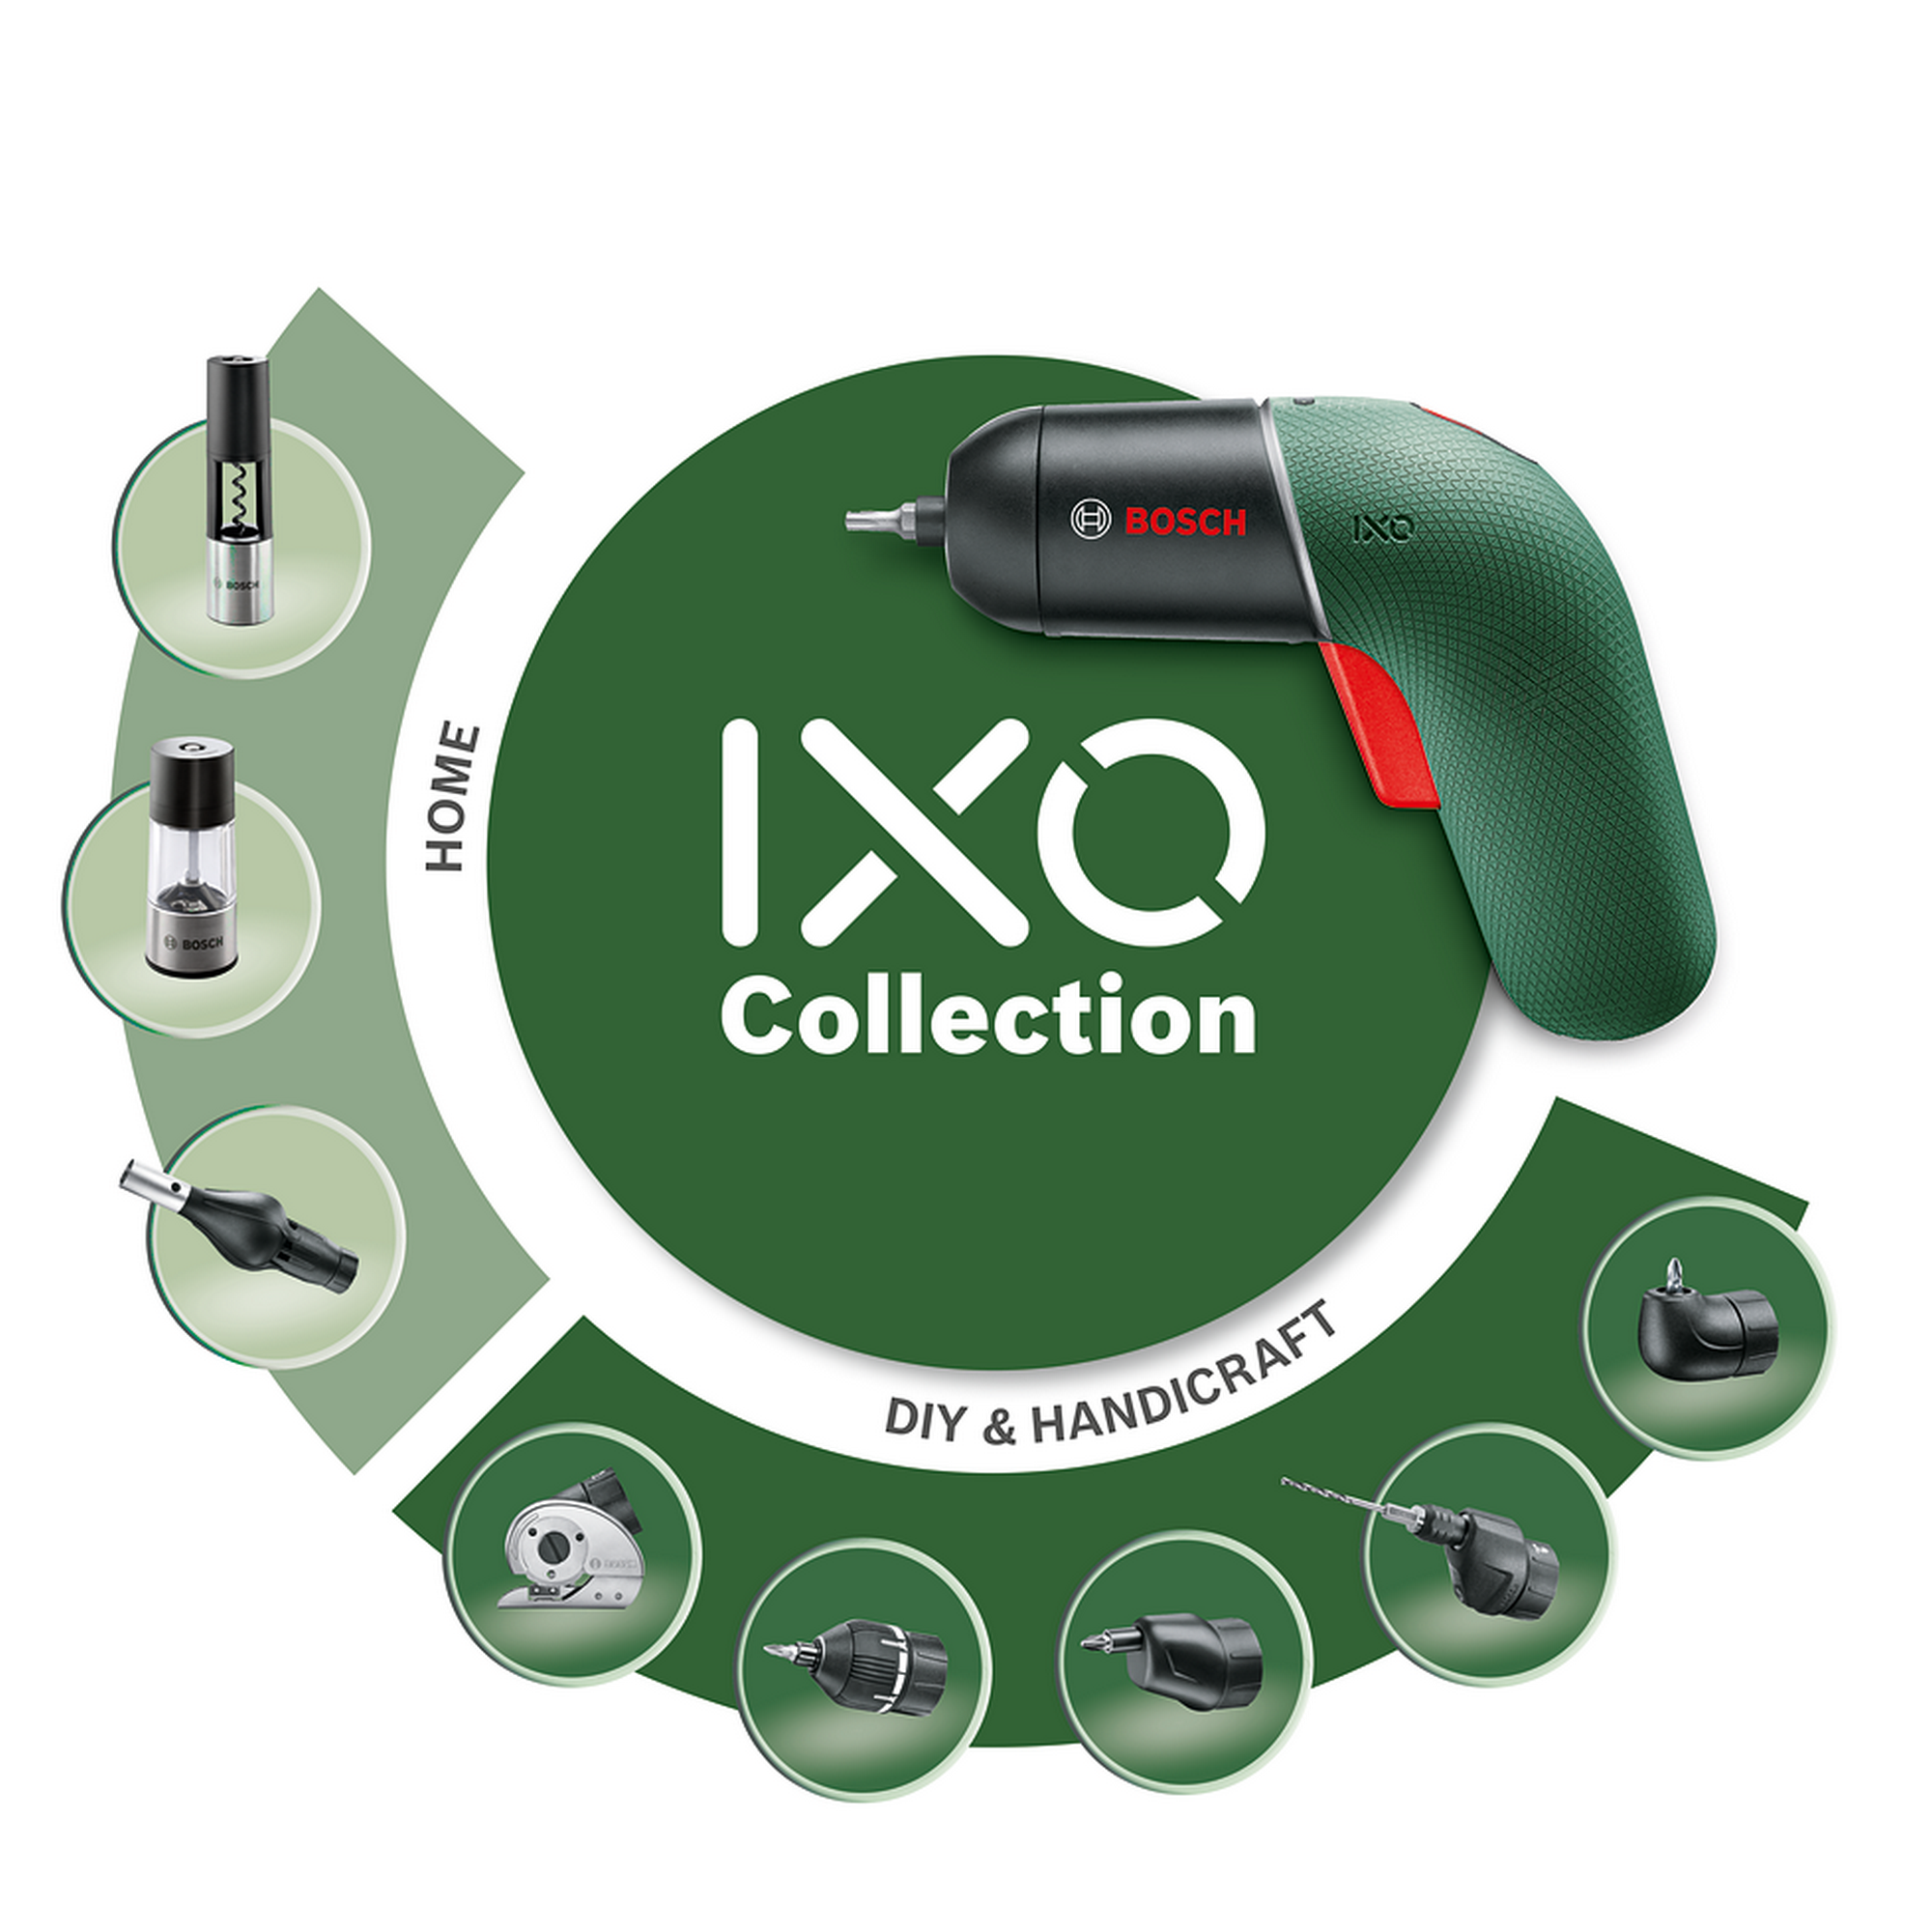 Akku-Schrauber 'IXO 6' Set - mit Winkelaufsatz und Exzenteraufsatz + product picture